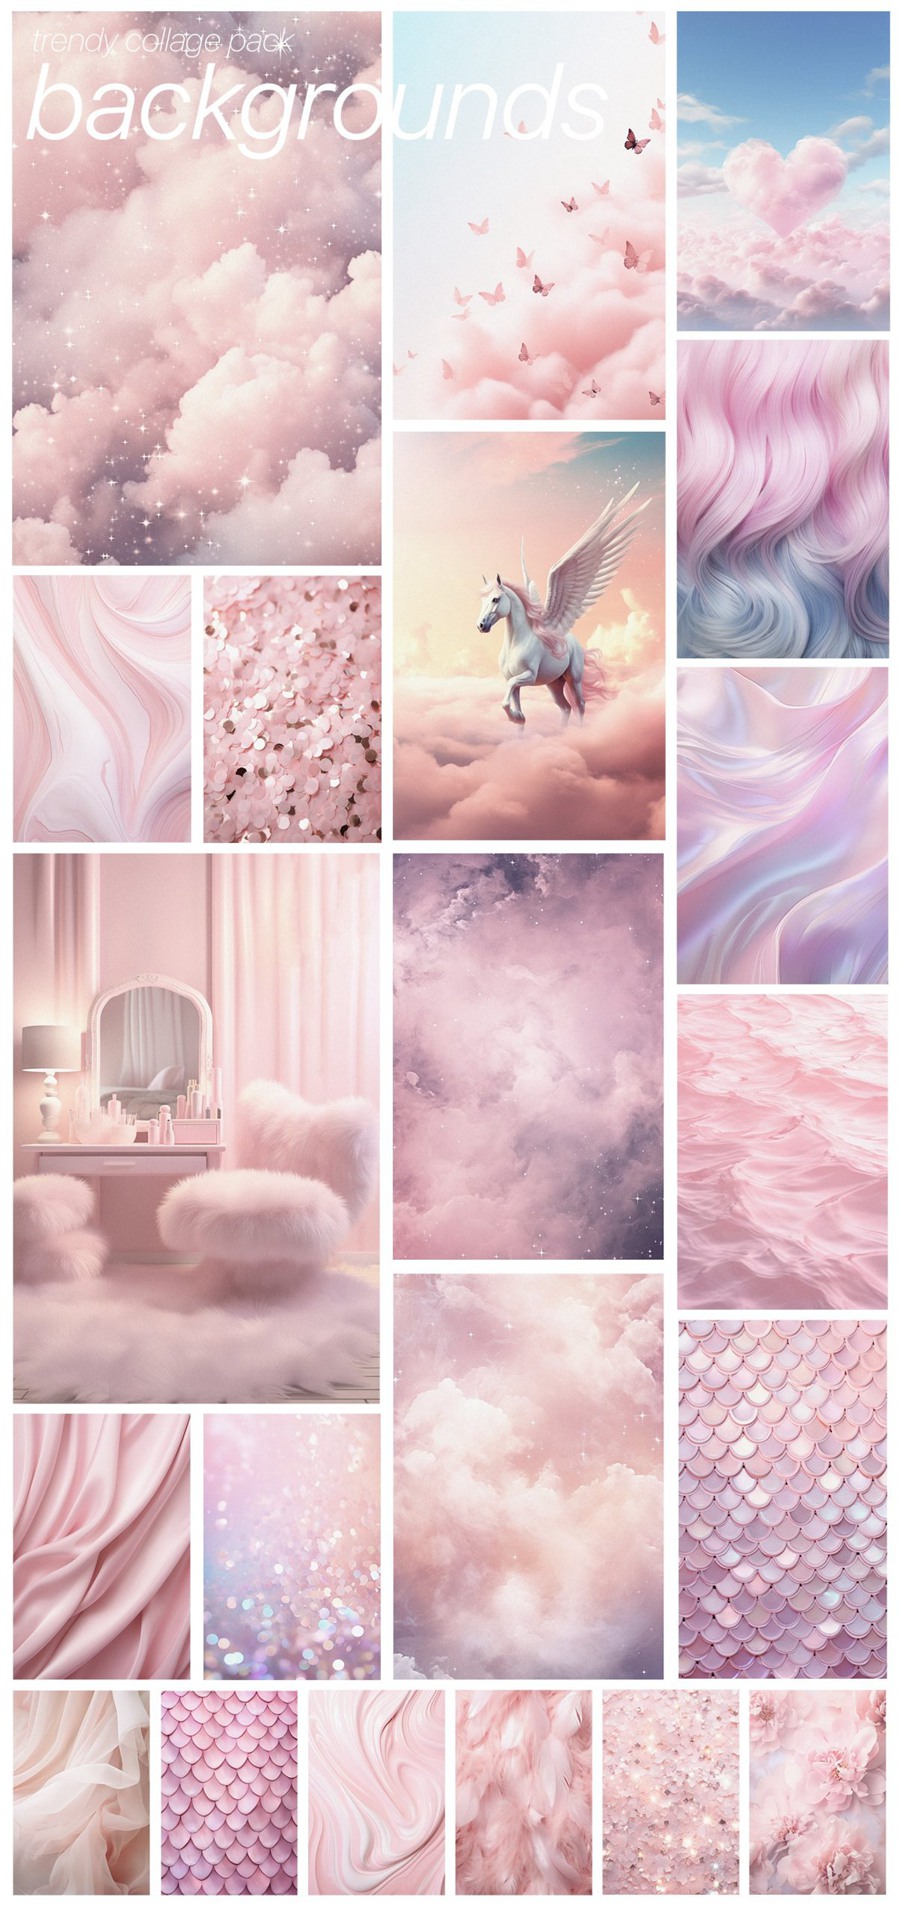 芭比乐园粉色梦幻拼贴艺术海报设计卡片包装品牌图形和背景纹理拼贴包 BARBIELAND pink graphic collage pack 图片素材 第7张